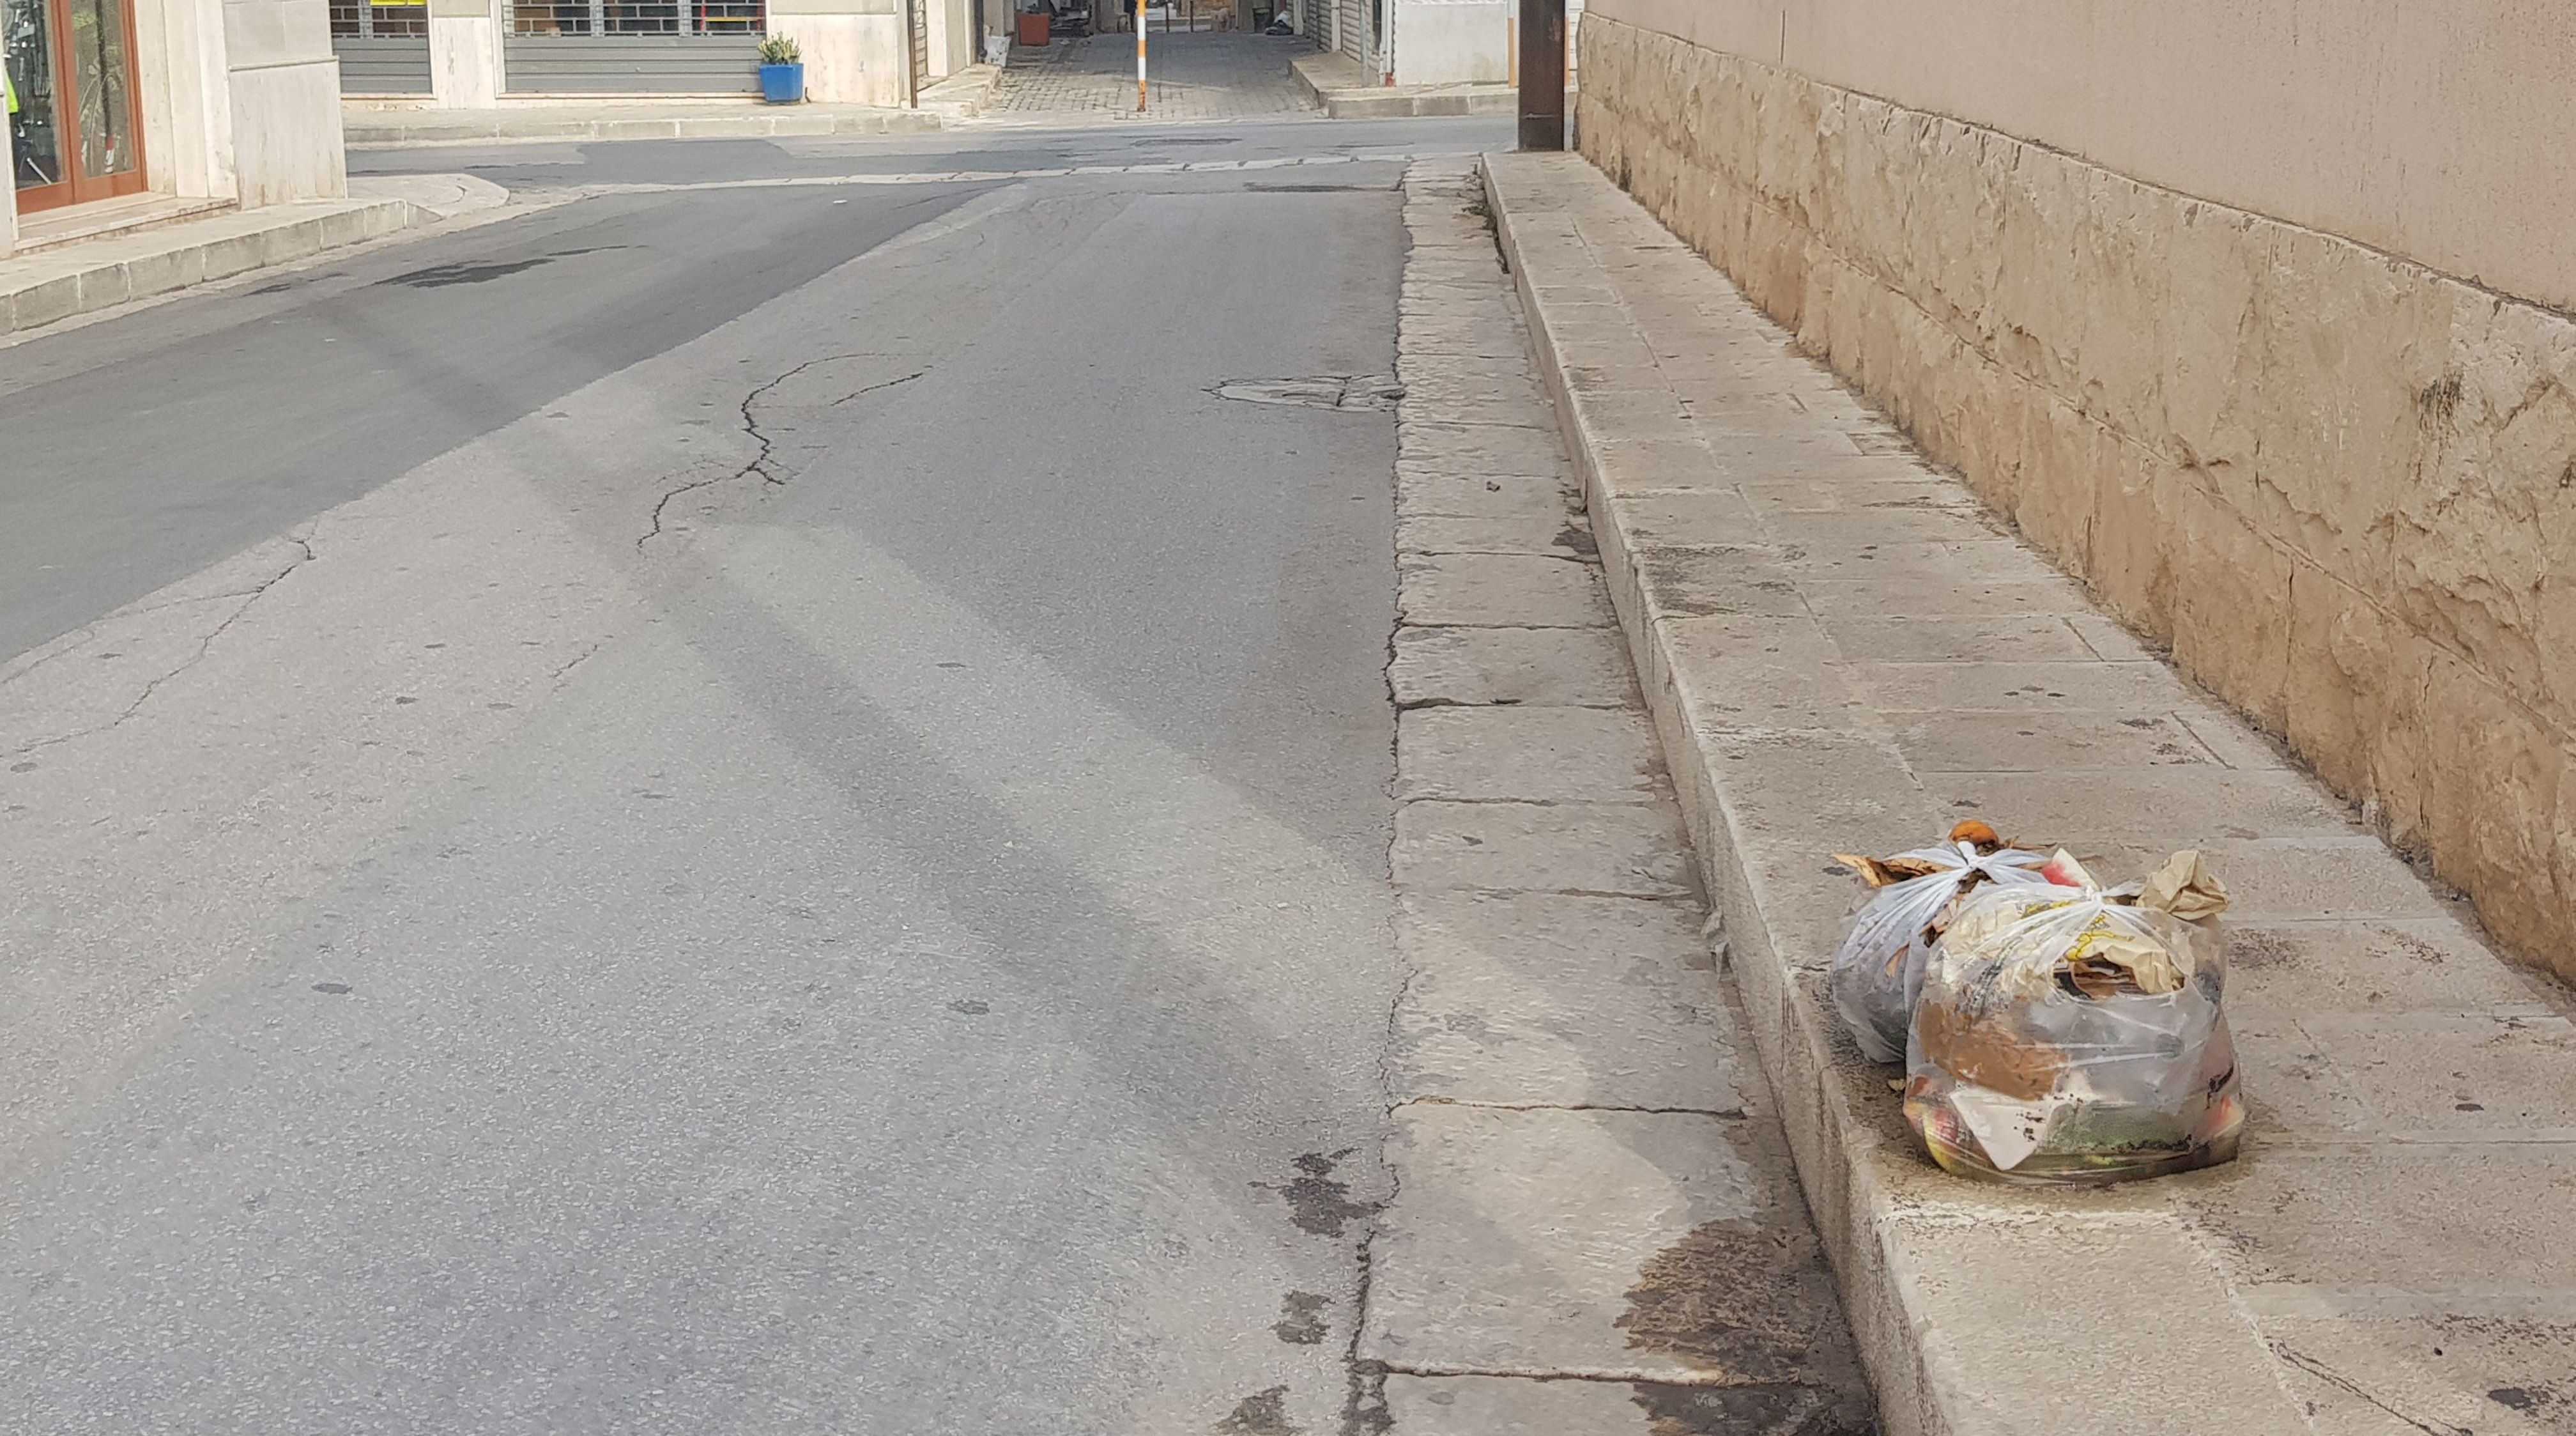  Umido, sacchetti e rifiuti sui marciapiedi: che fatica la nuova differenziata